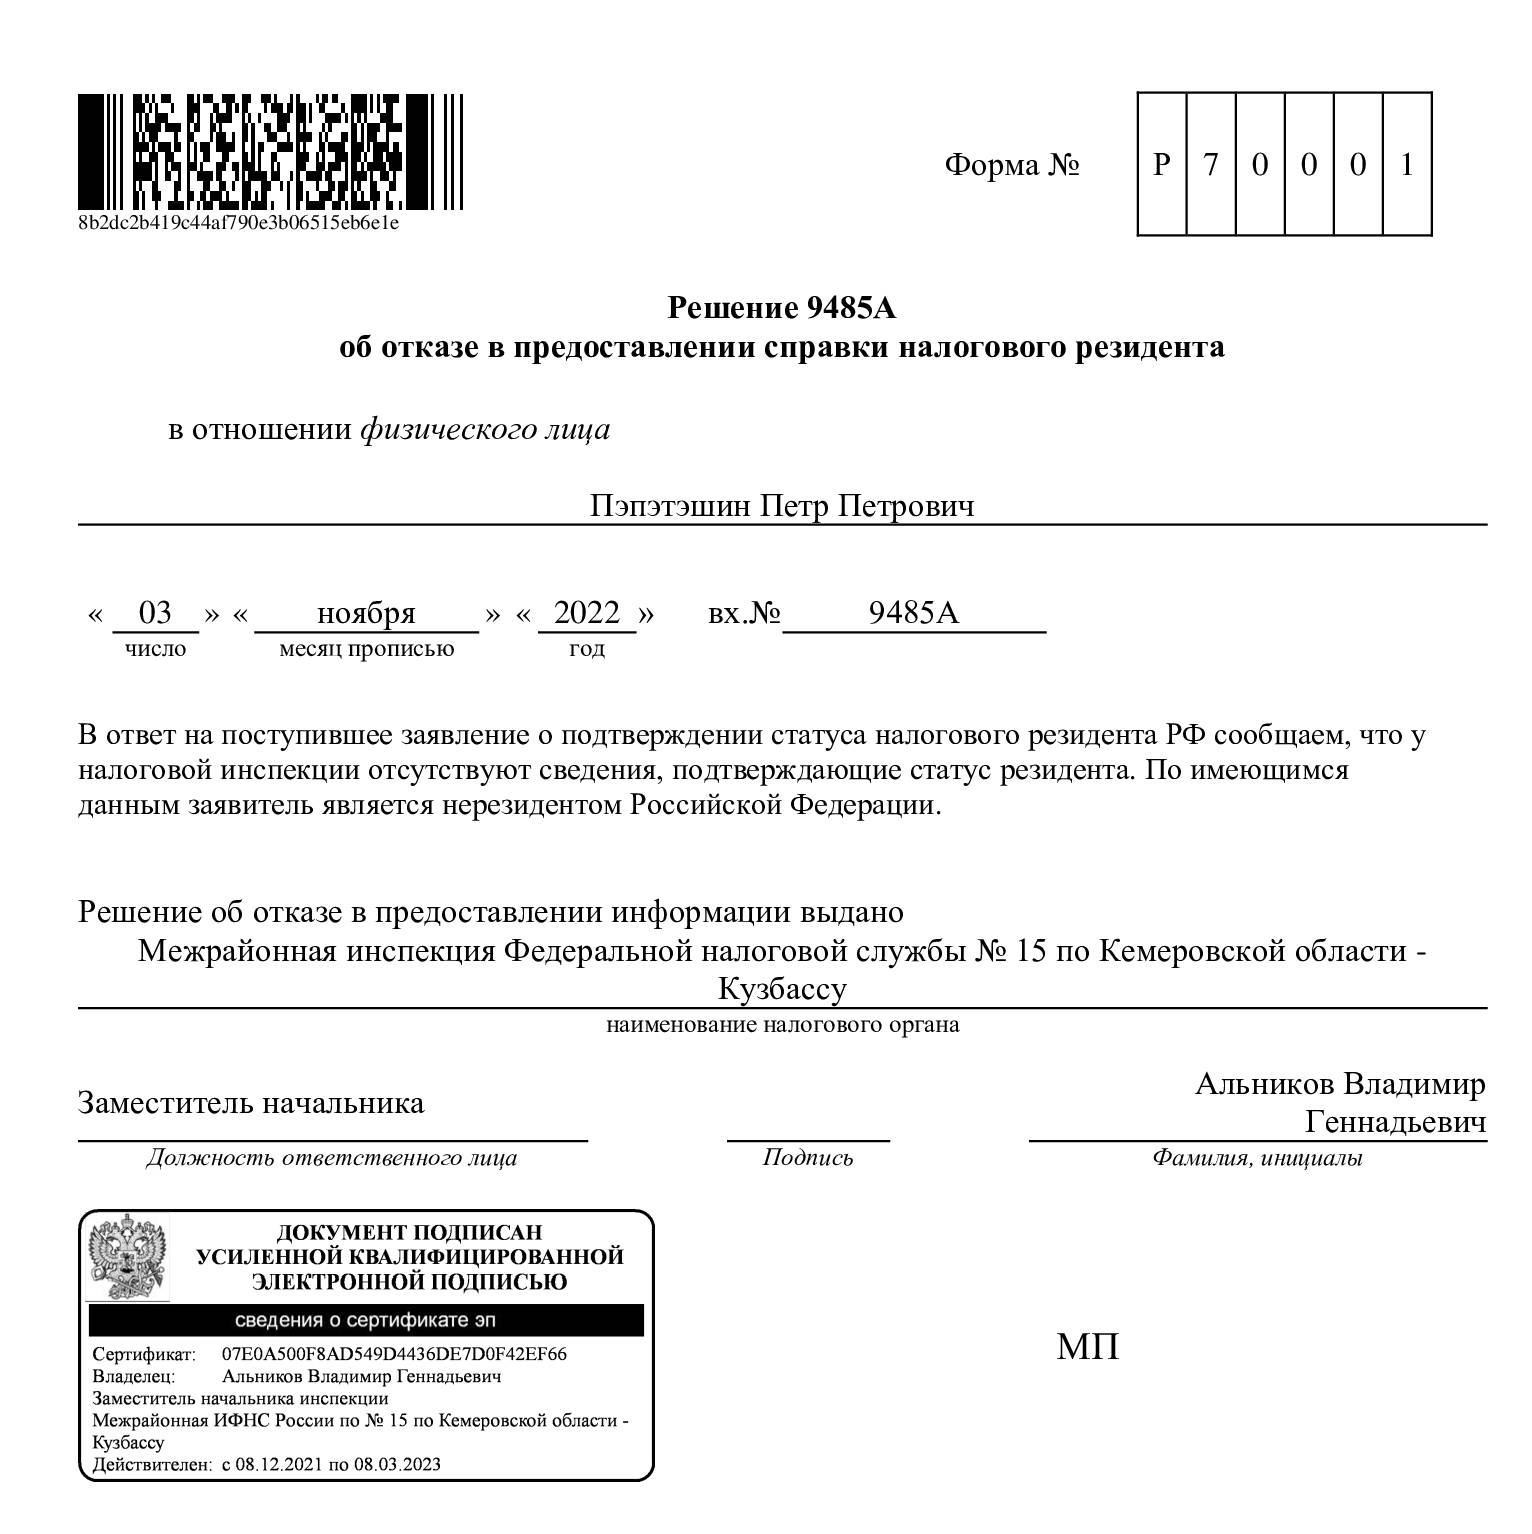 Подтверждающий статус налогового резидента российской федерации